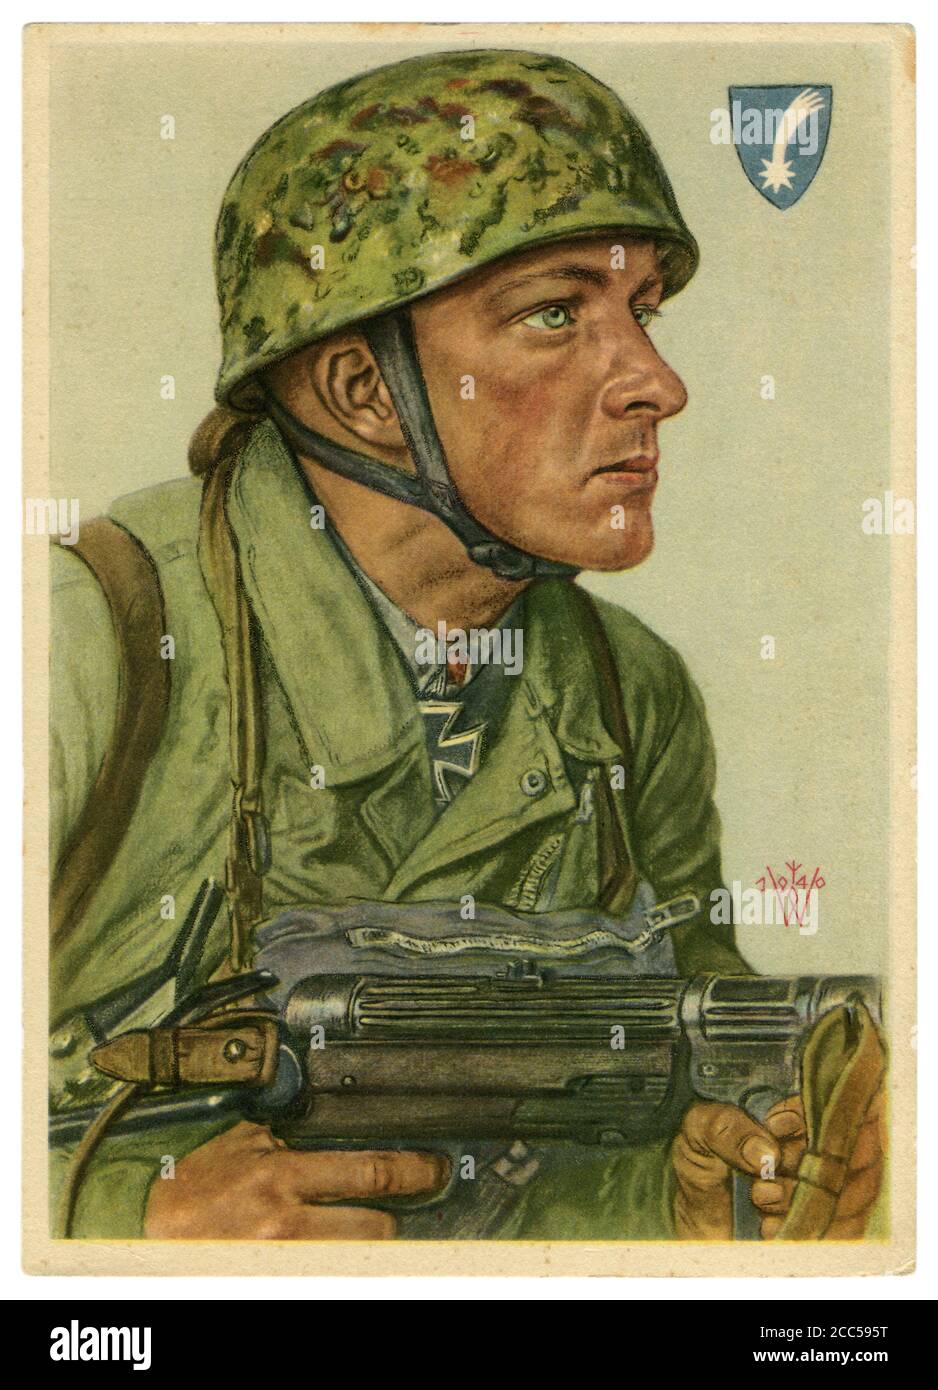 Cartolina storica tedesca: Helmut Arpke, Feldwebel dei paracadutisti, insignito della Croce di Cavaliere della Croce di ferro, artista Wolfgang Willrich, 1940 Foto Stock